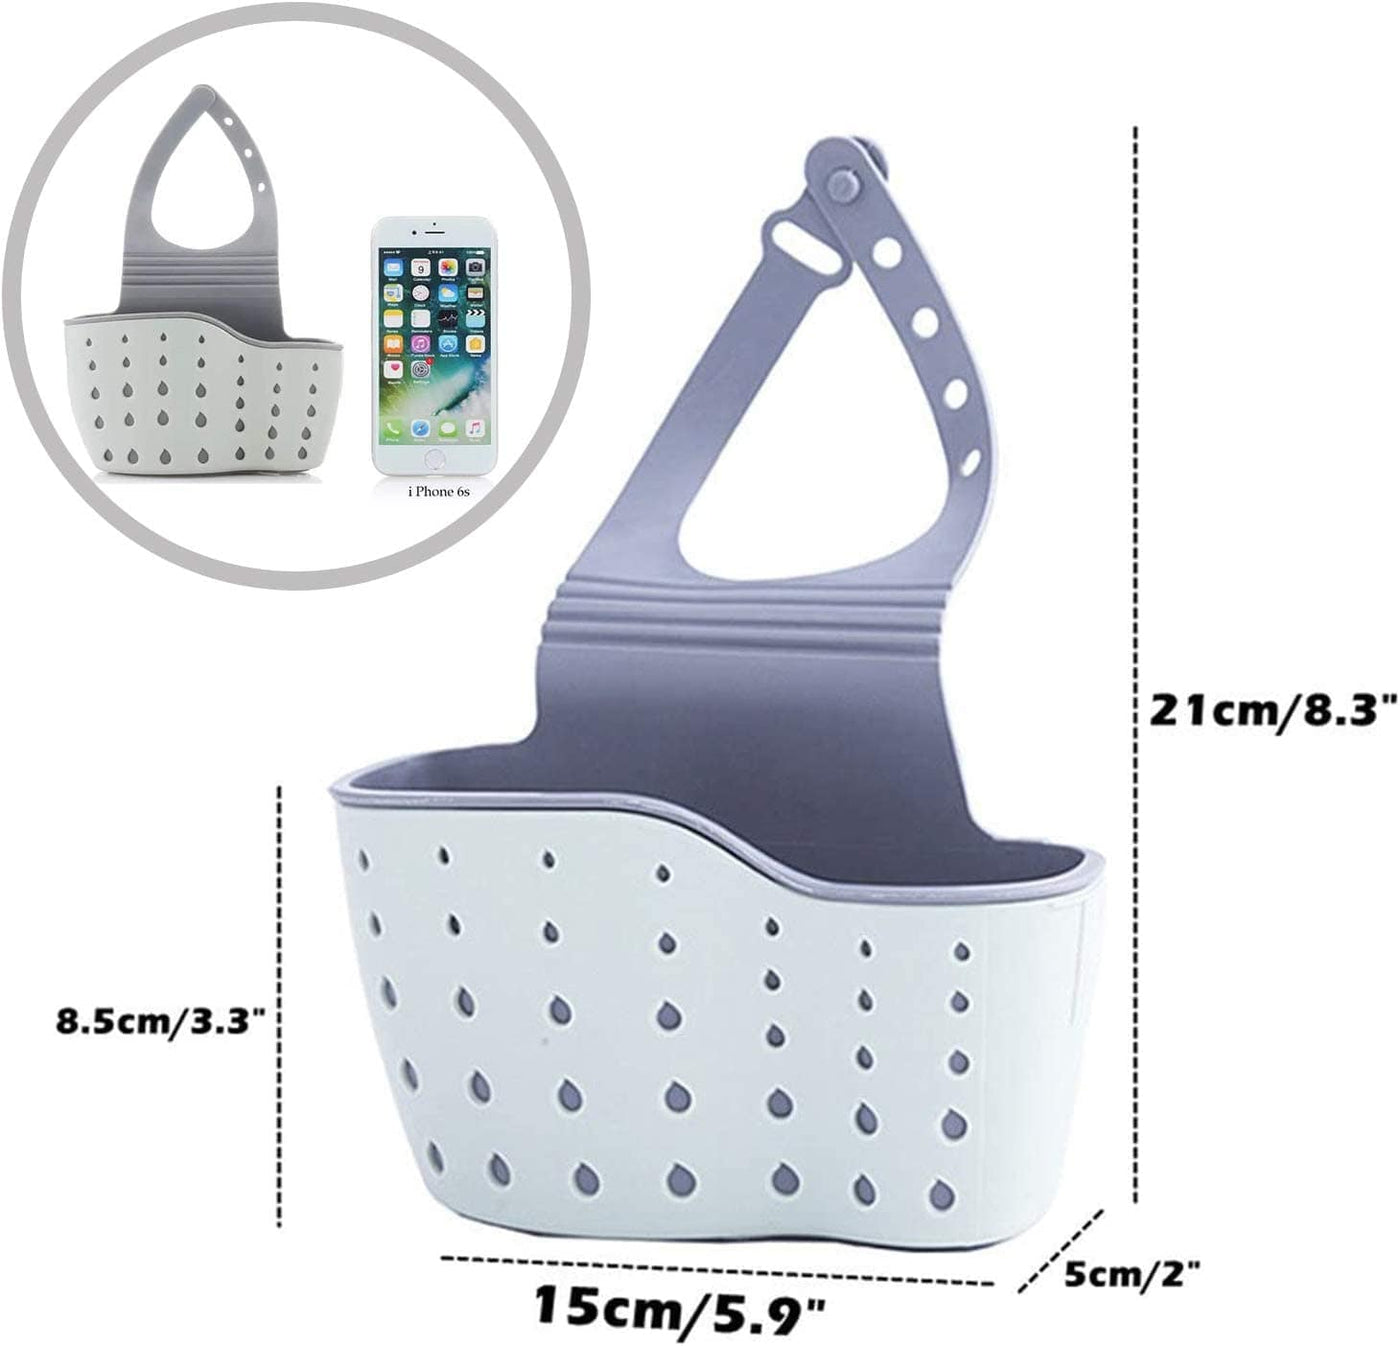 Dubkart Kitchen accessories Kitchen Bathroom Sink Caddy Sponge Holder Organizer Basket